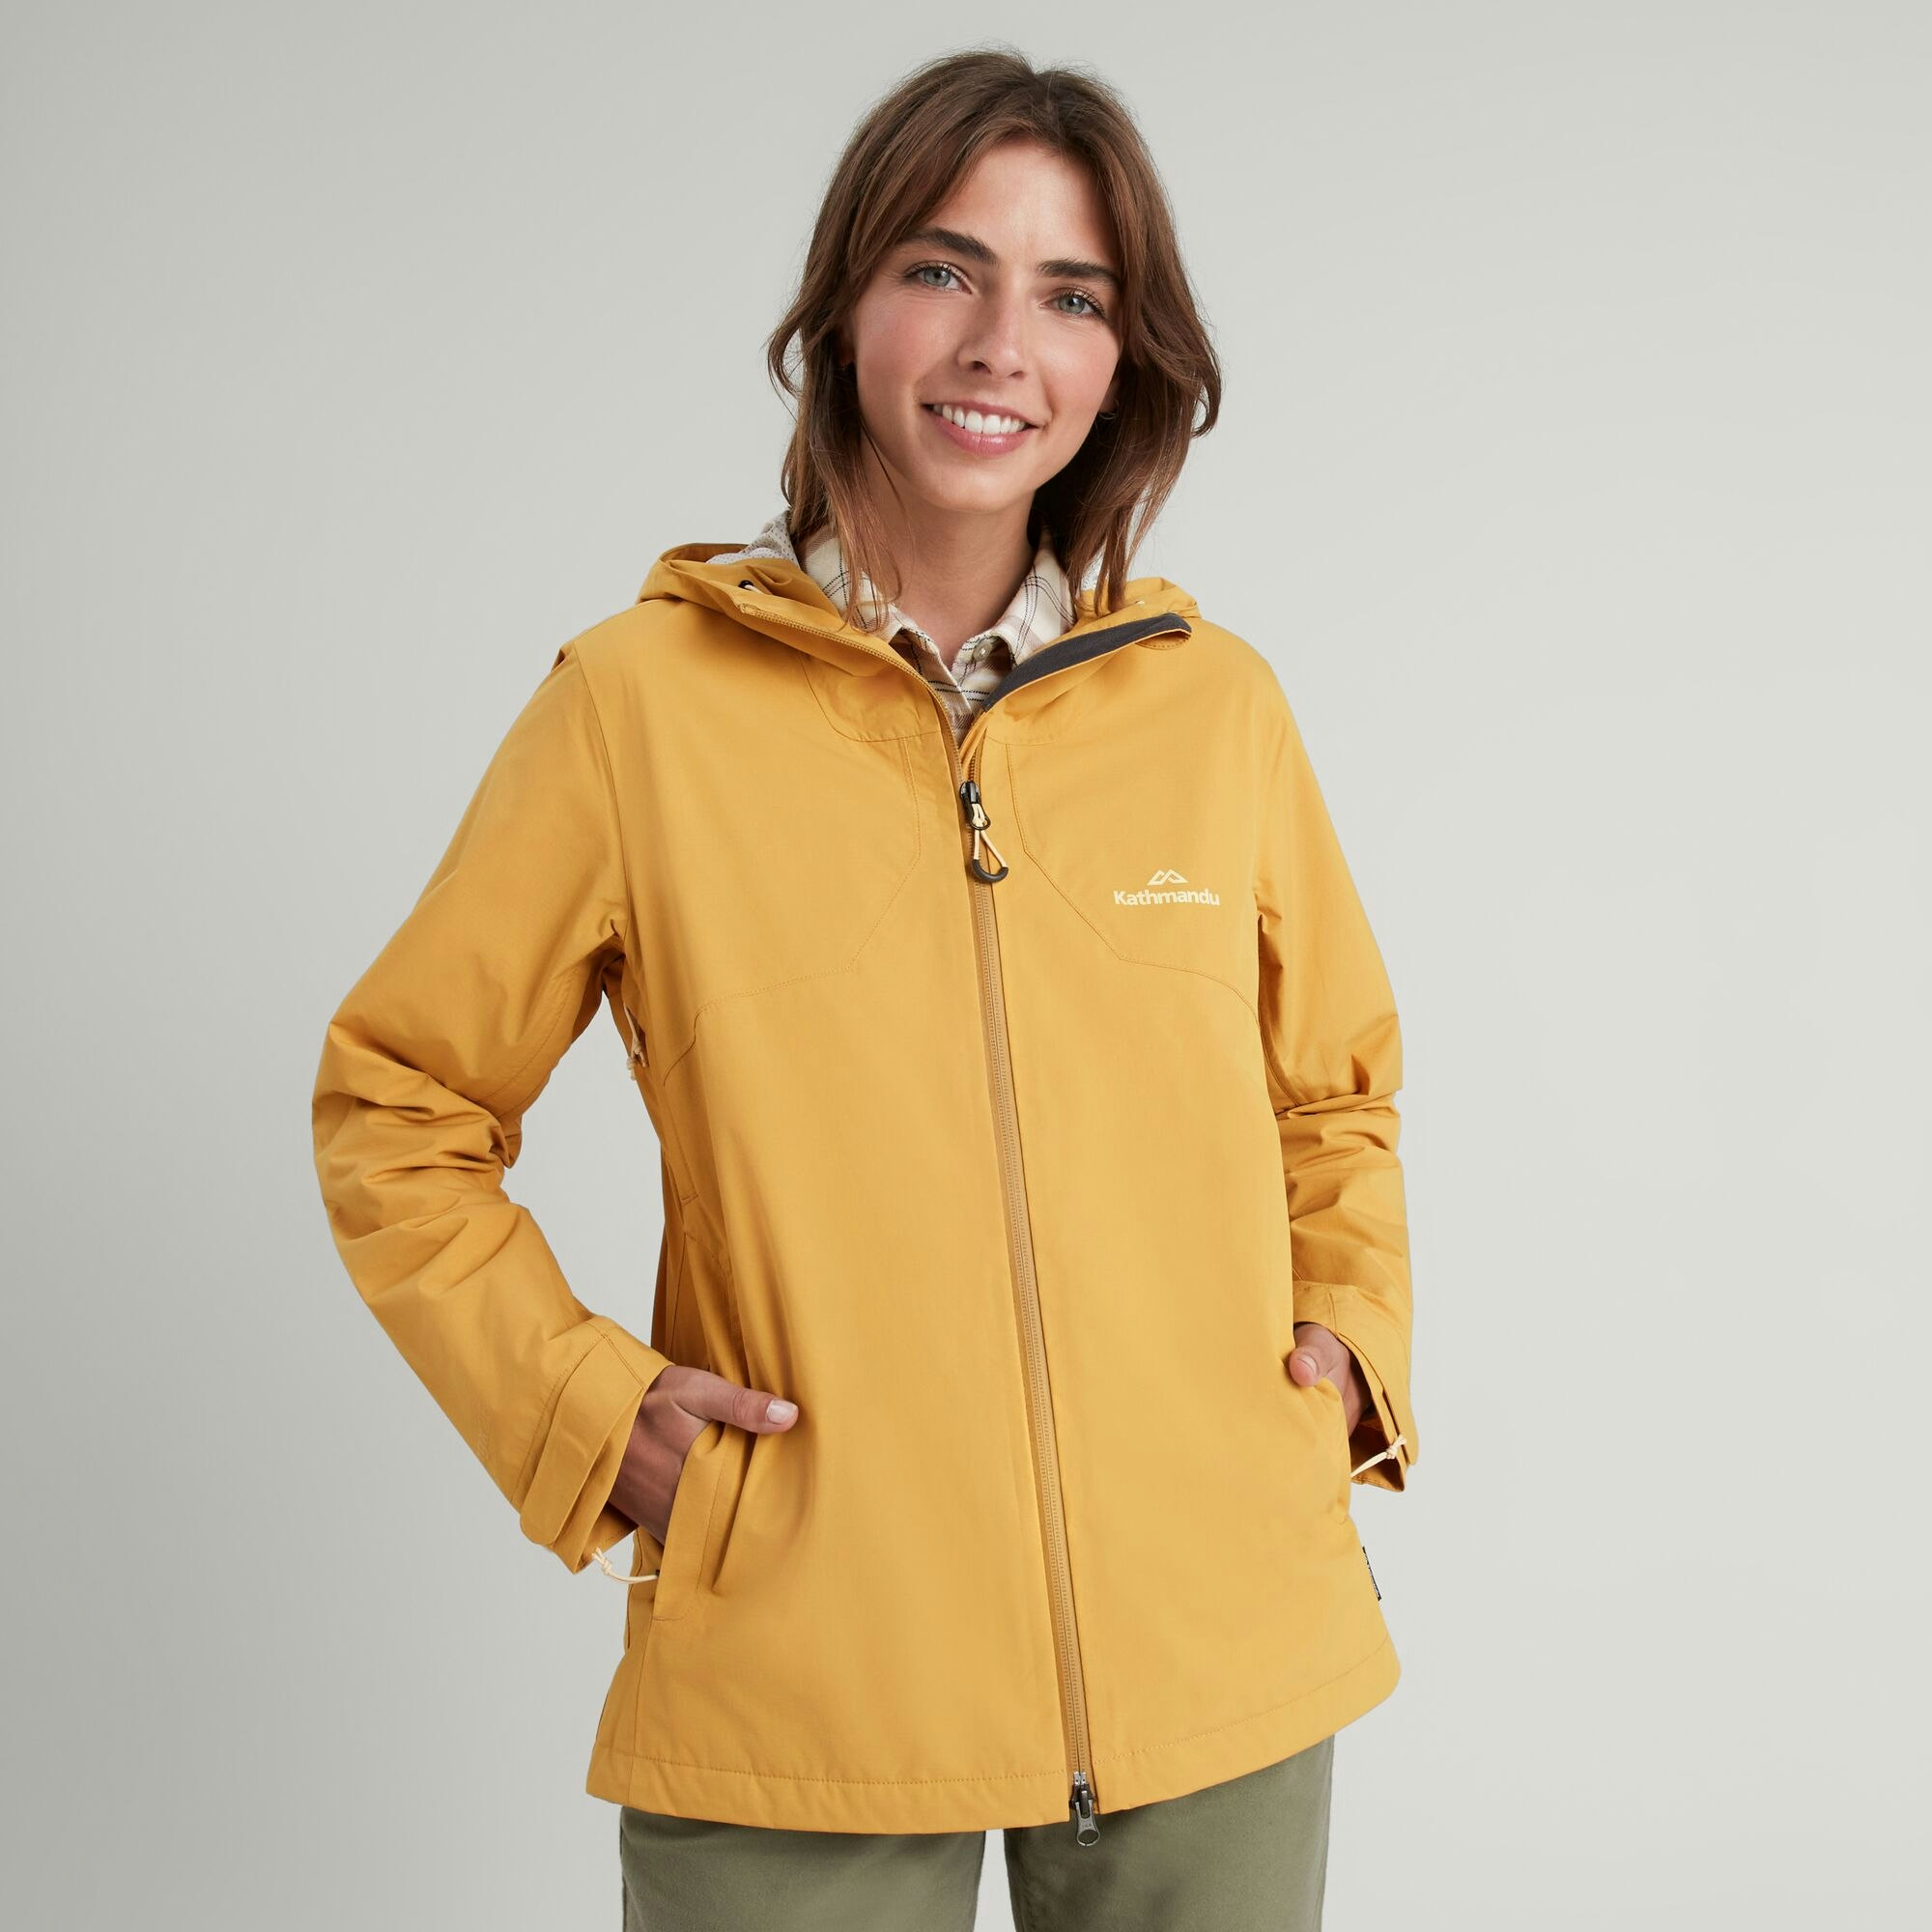 Buy Women's Snow Hiking Jacket Warm - 5°C Water Repellent Online |  Decathlon